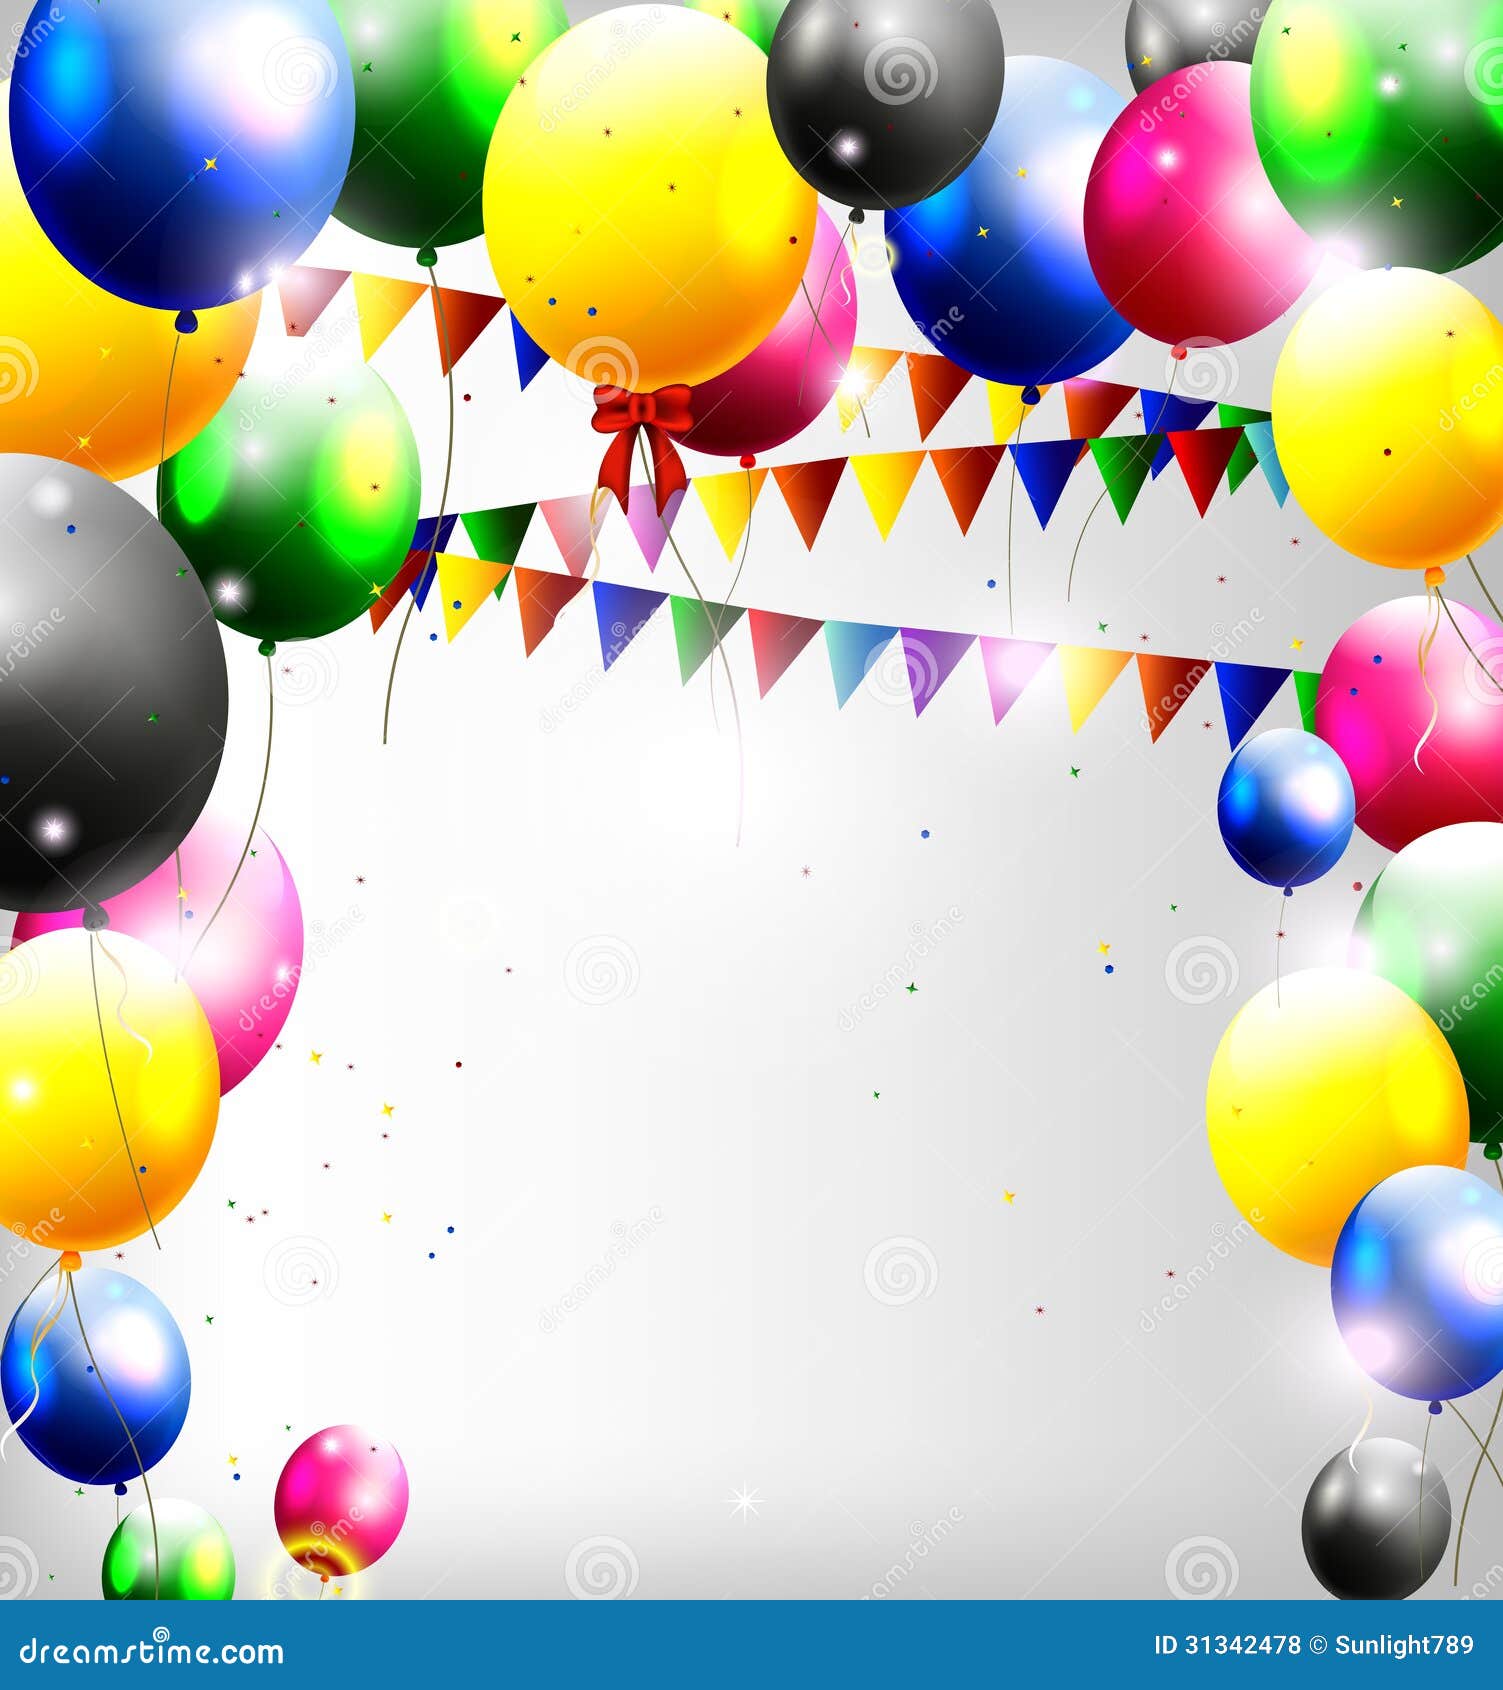 balloon decoration clipart - photo #4